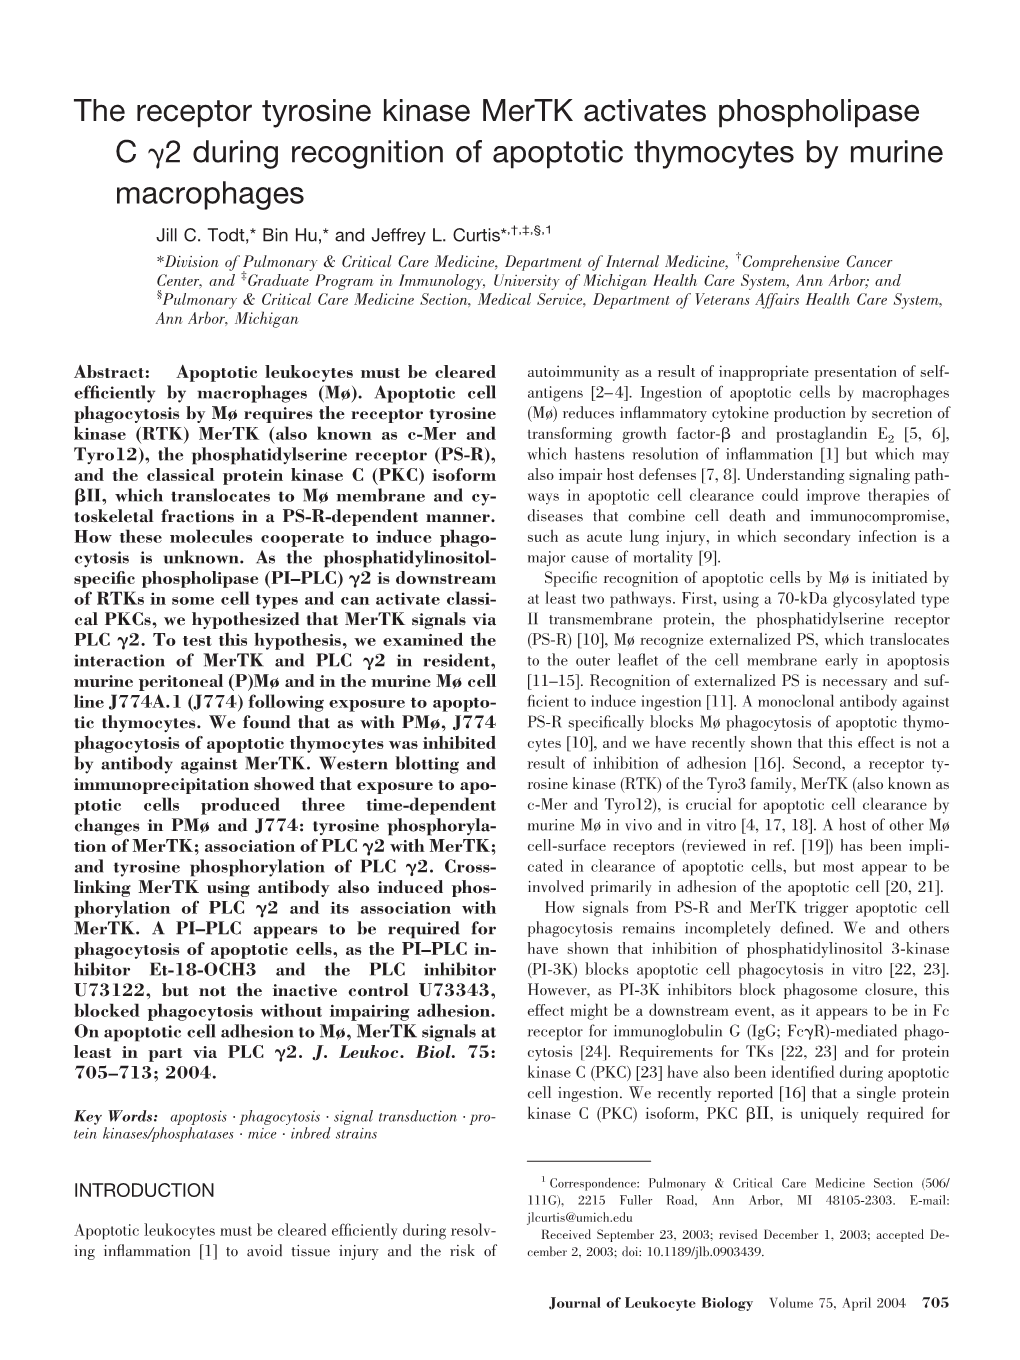 The Receptor Tyrosine Kinase Mertk Activates Phospholipase C &#X03b3